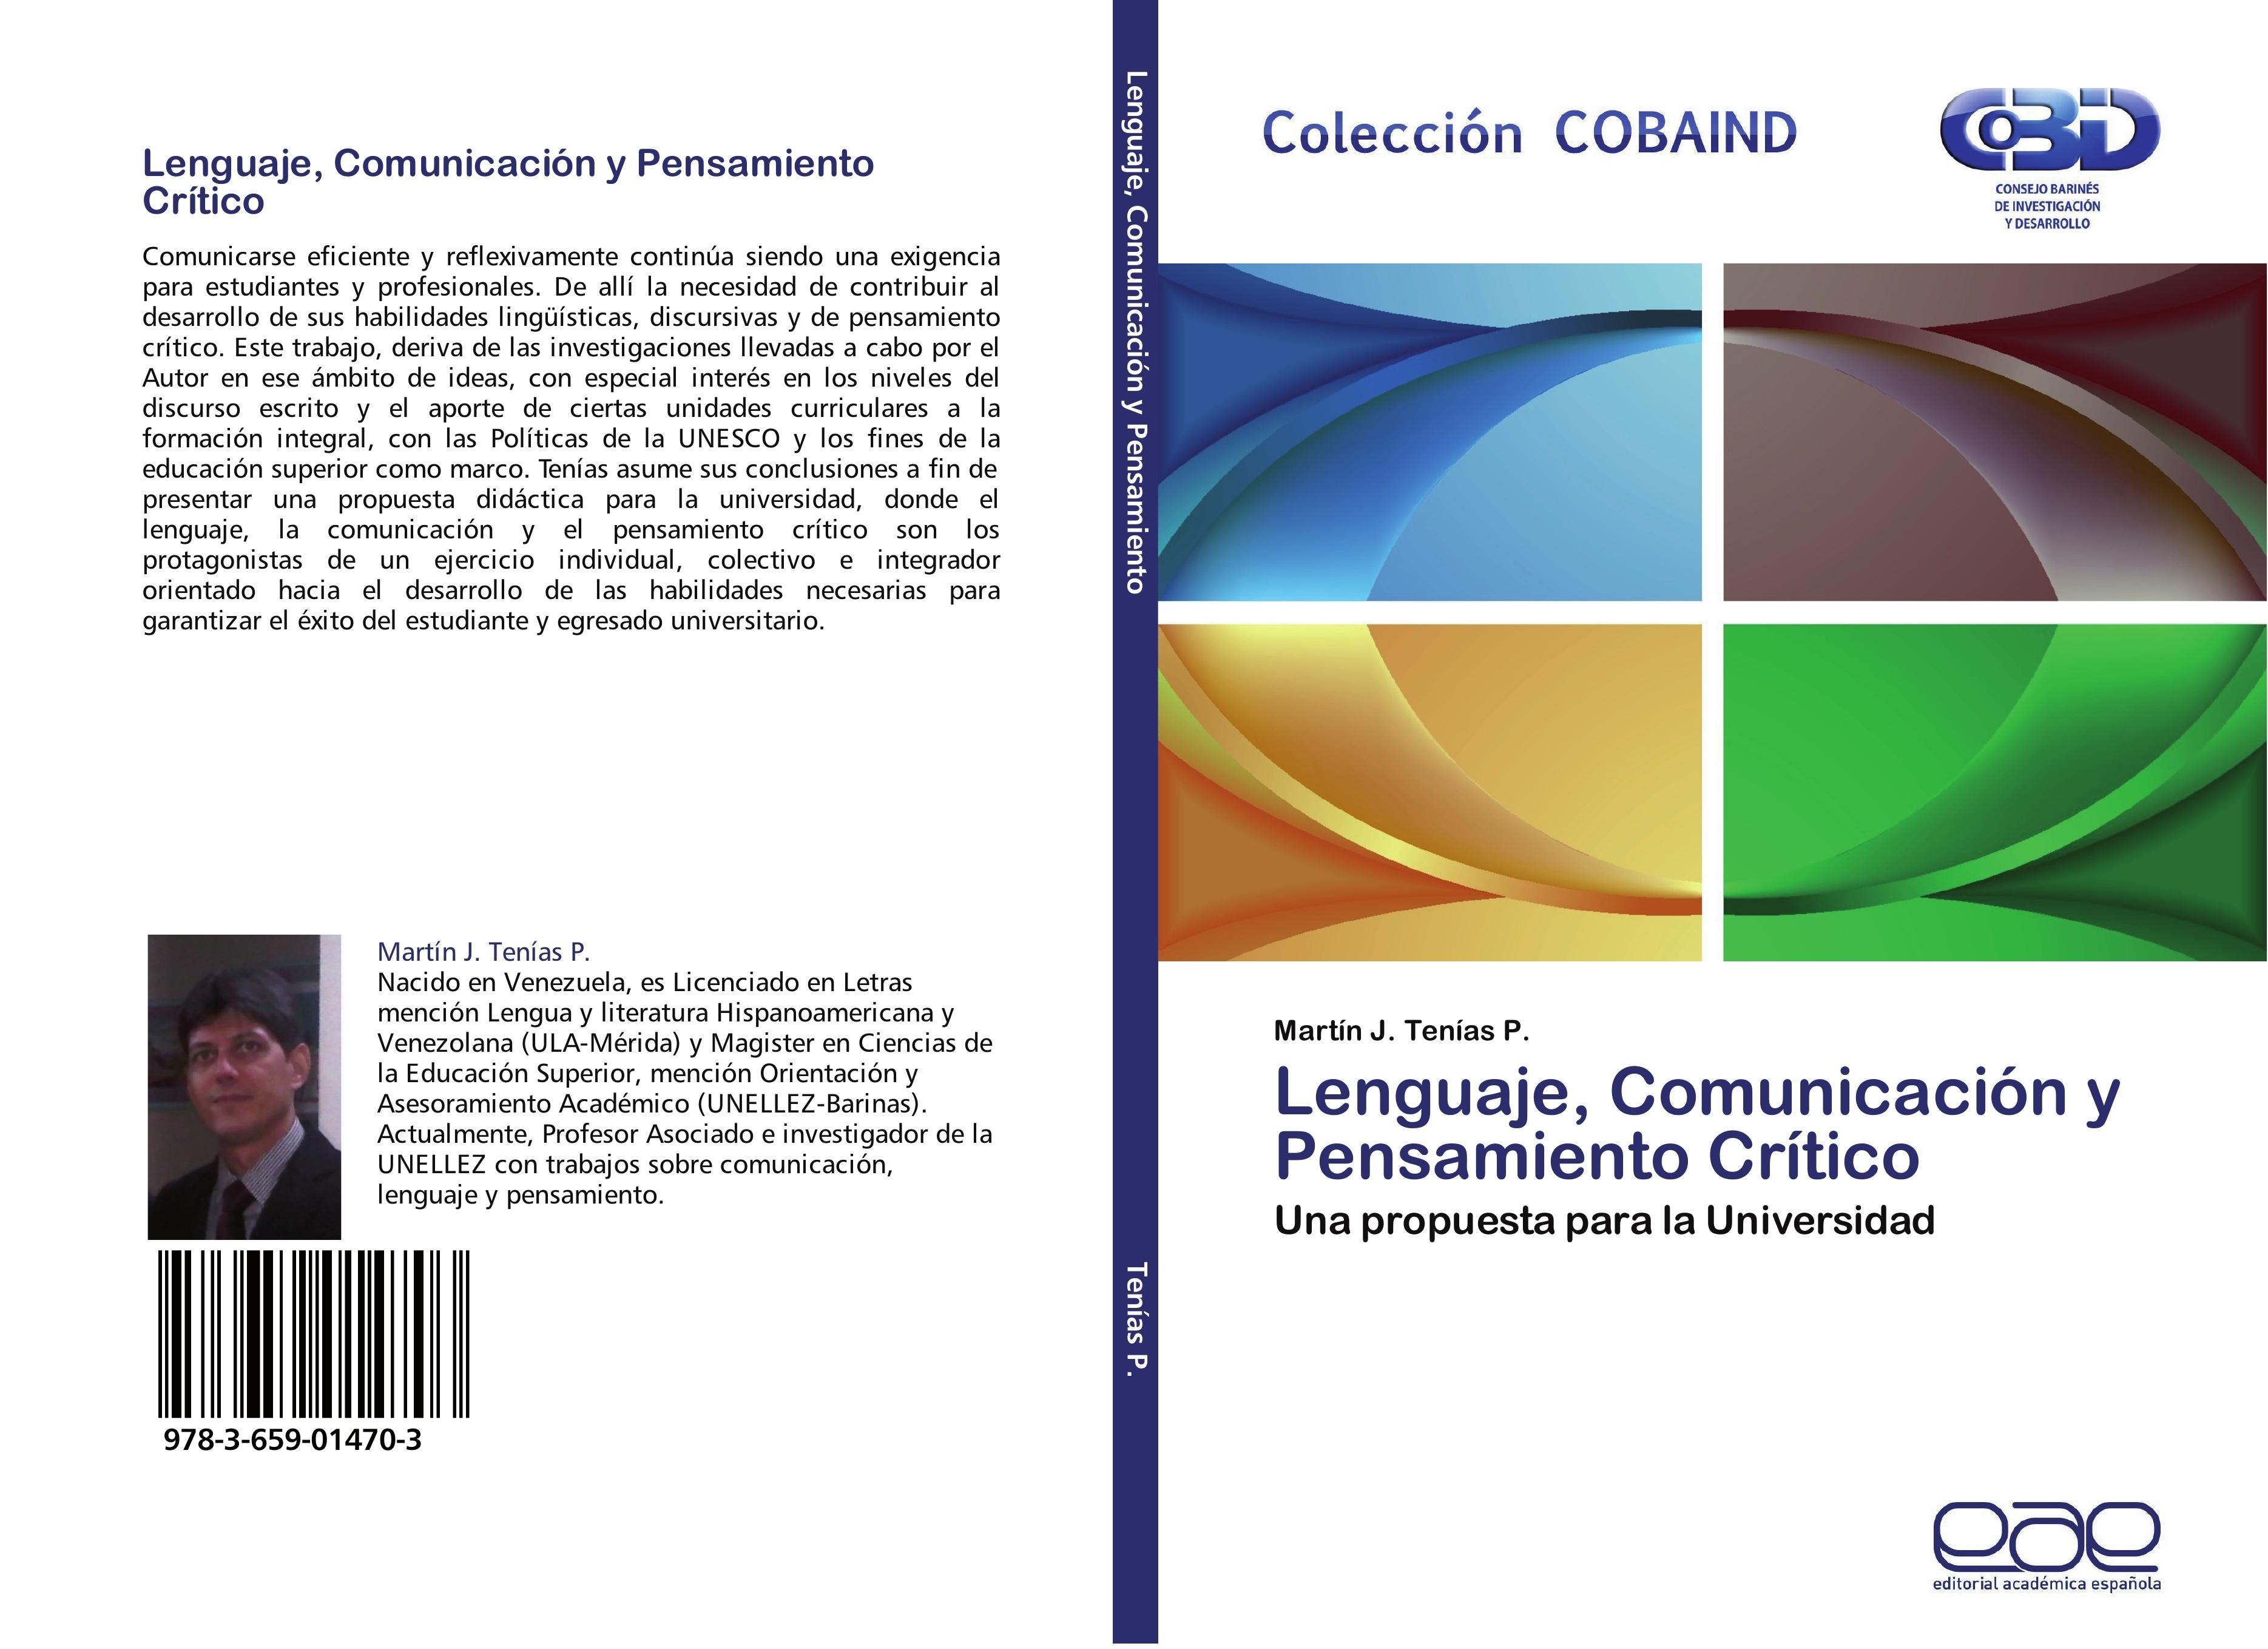 Lenguaje, Comunicación y Pensamiento Crítico - Martín J. Tenías P.